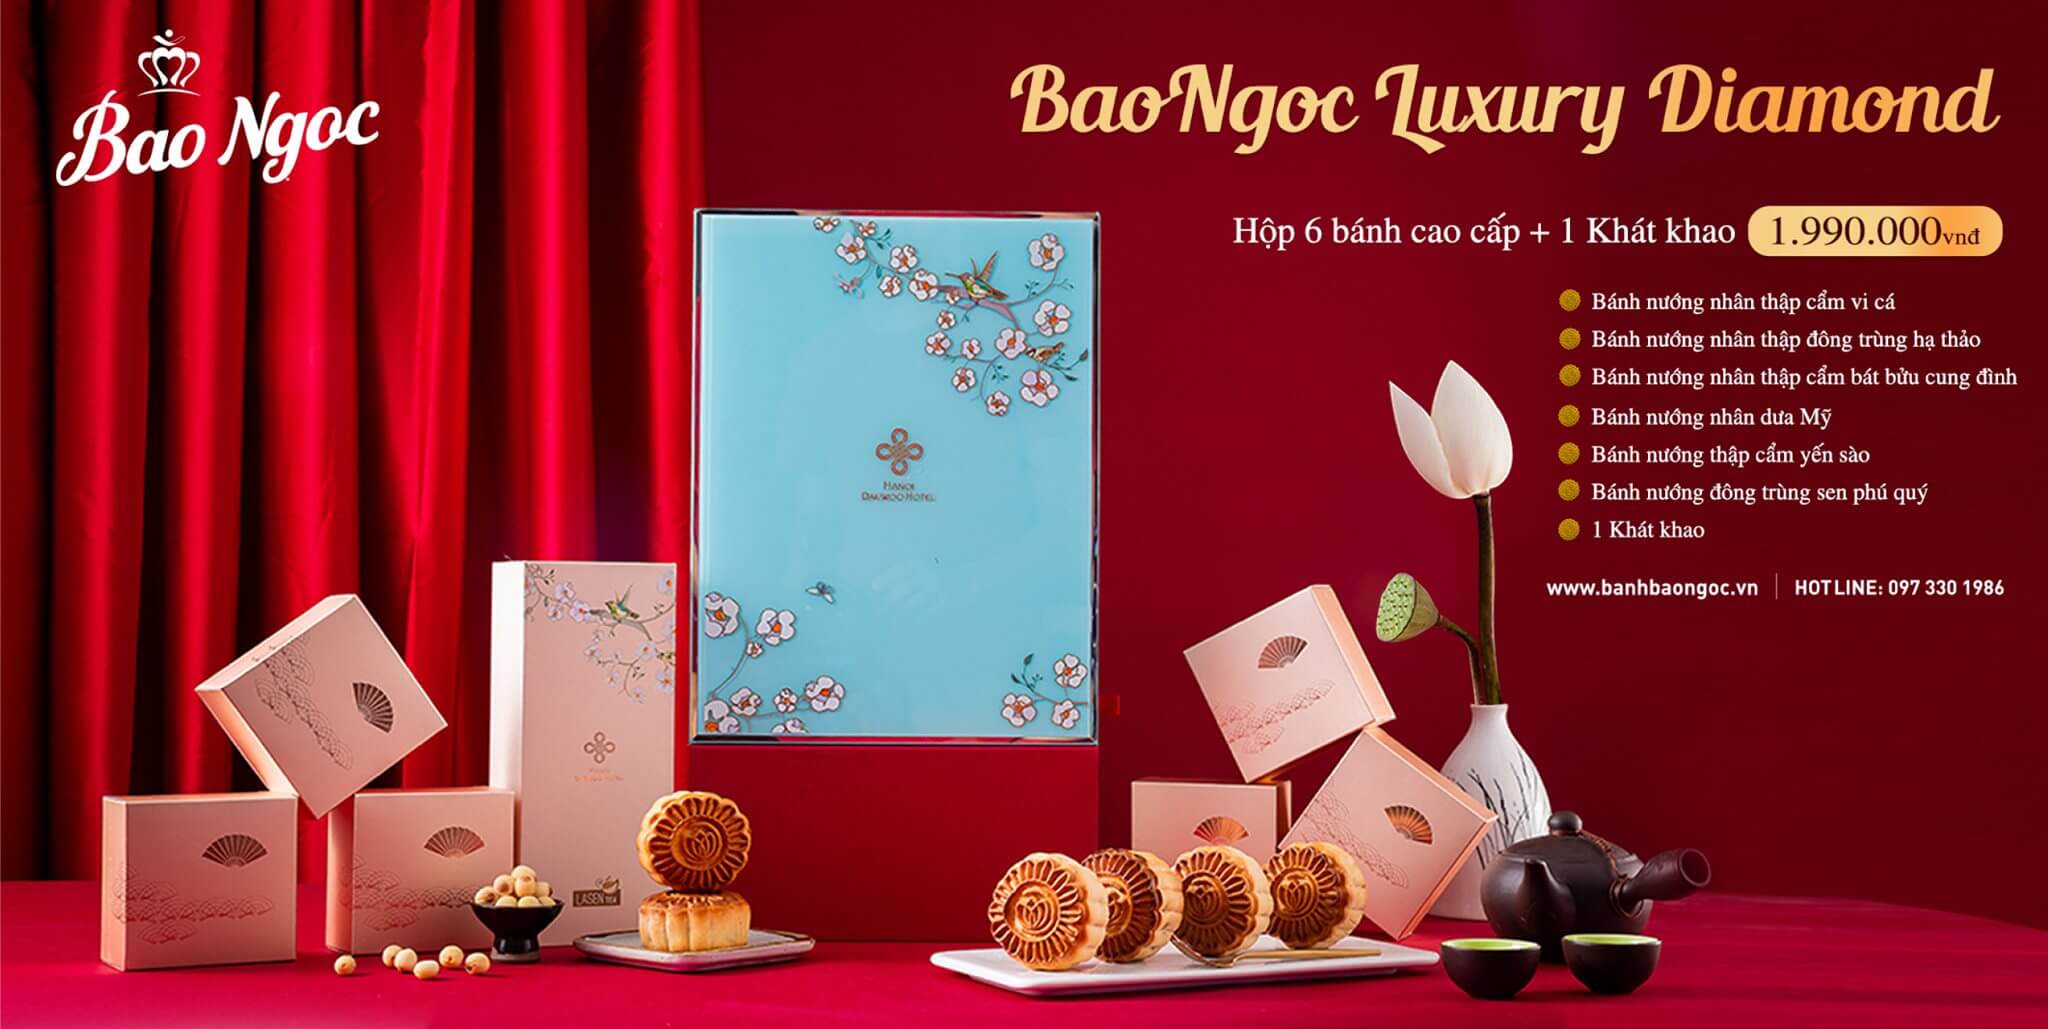 BaoNgoc Luxury Diamond - Giá bán: 1.990.000 đ